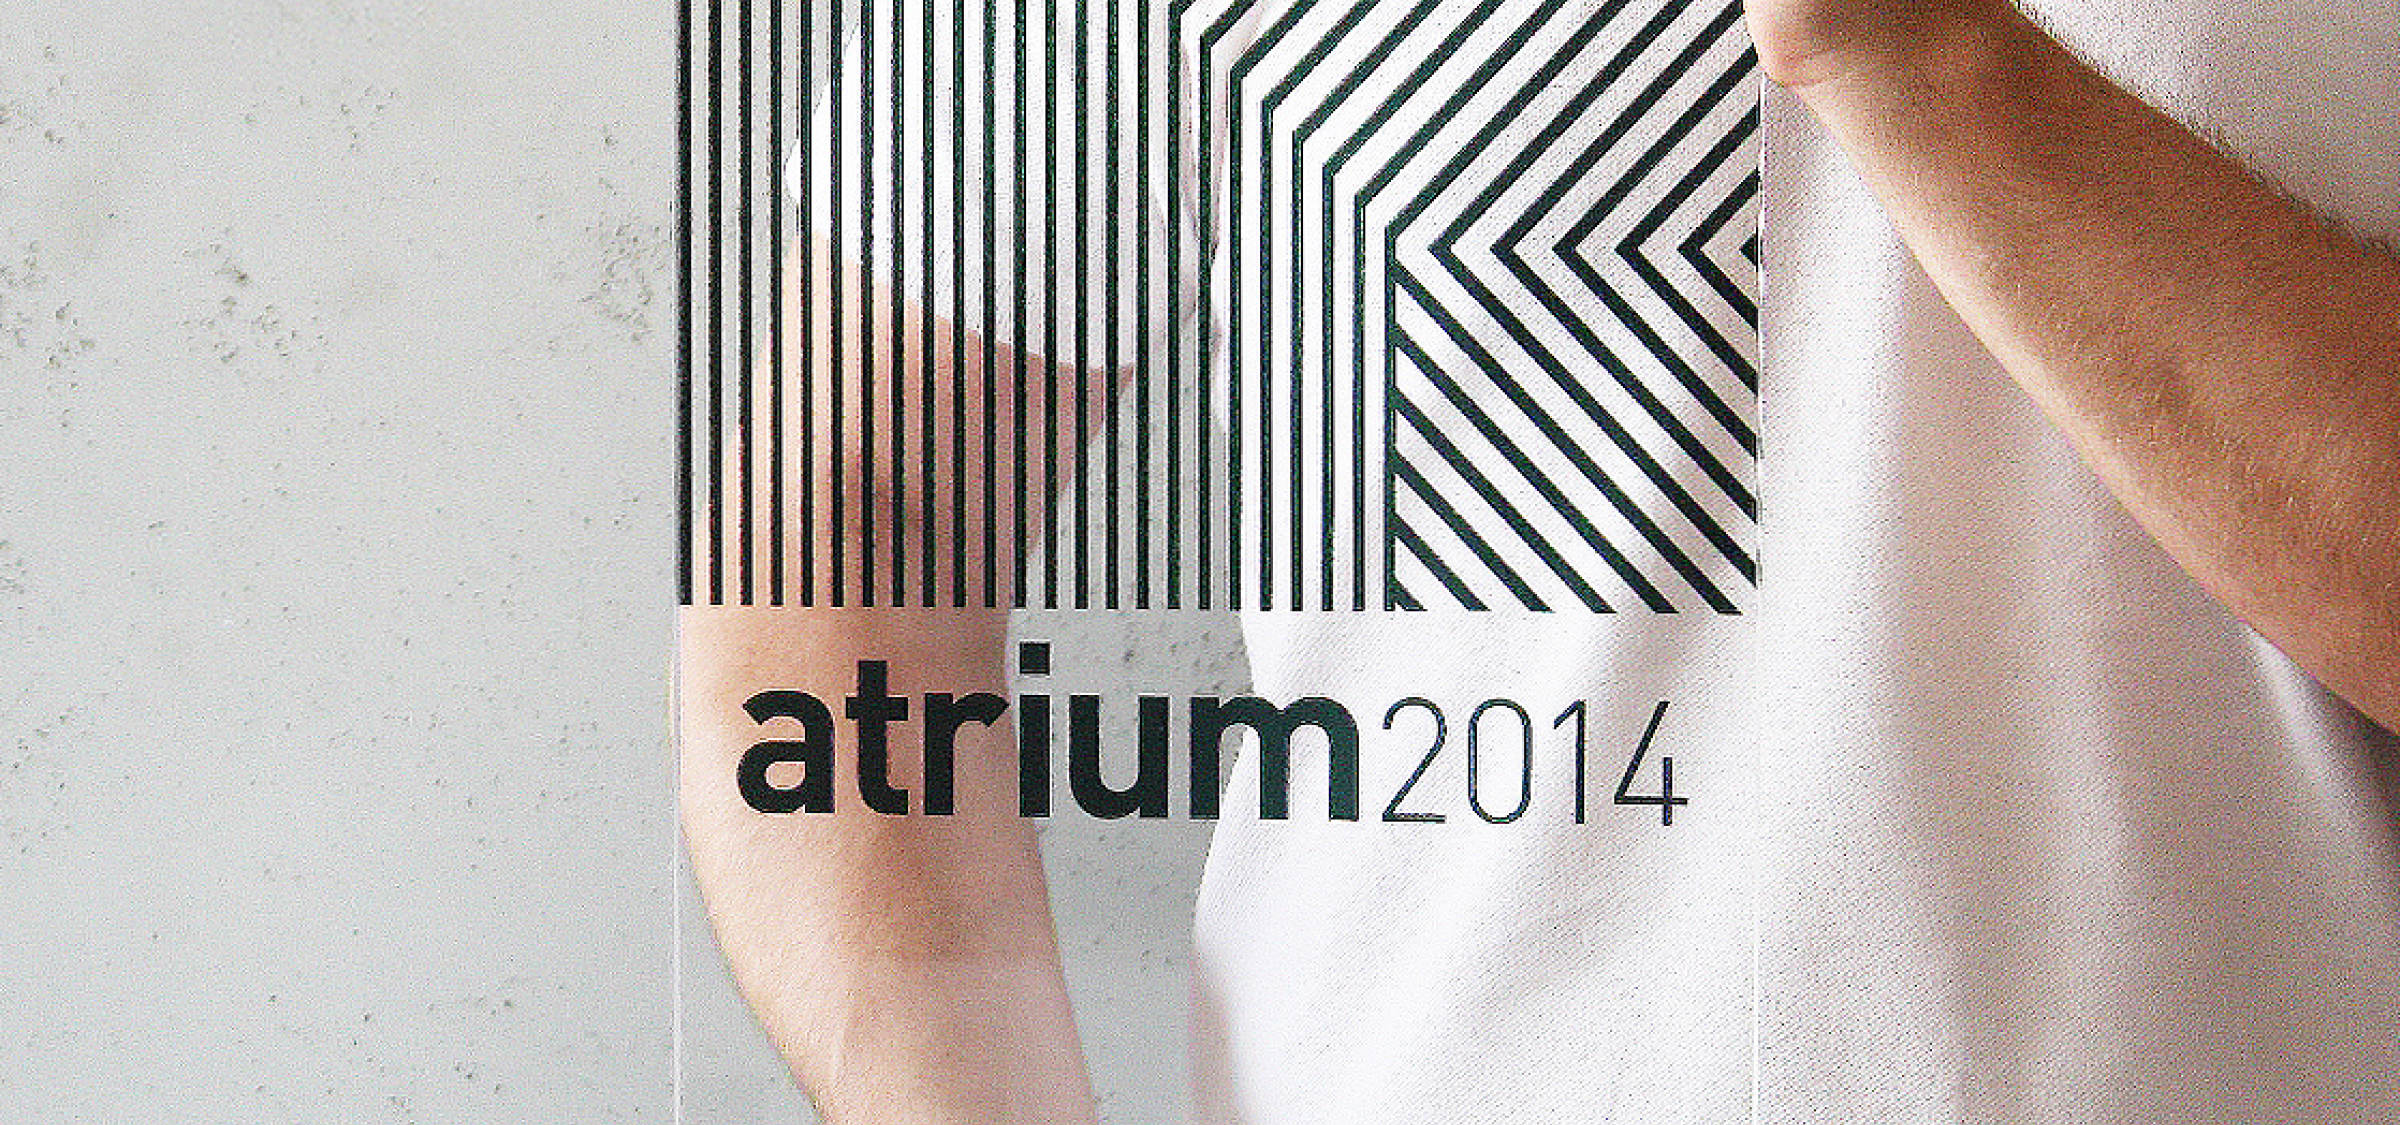 Atrium 2014 - cena za architektúru | Aktuálne | Atrium Architekti